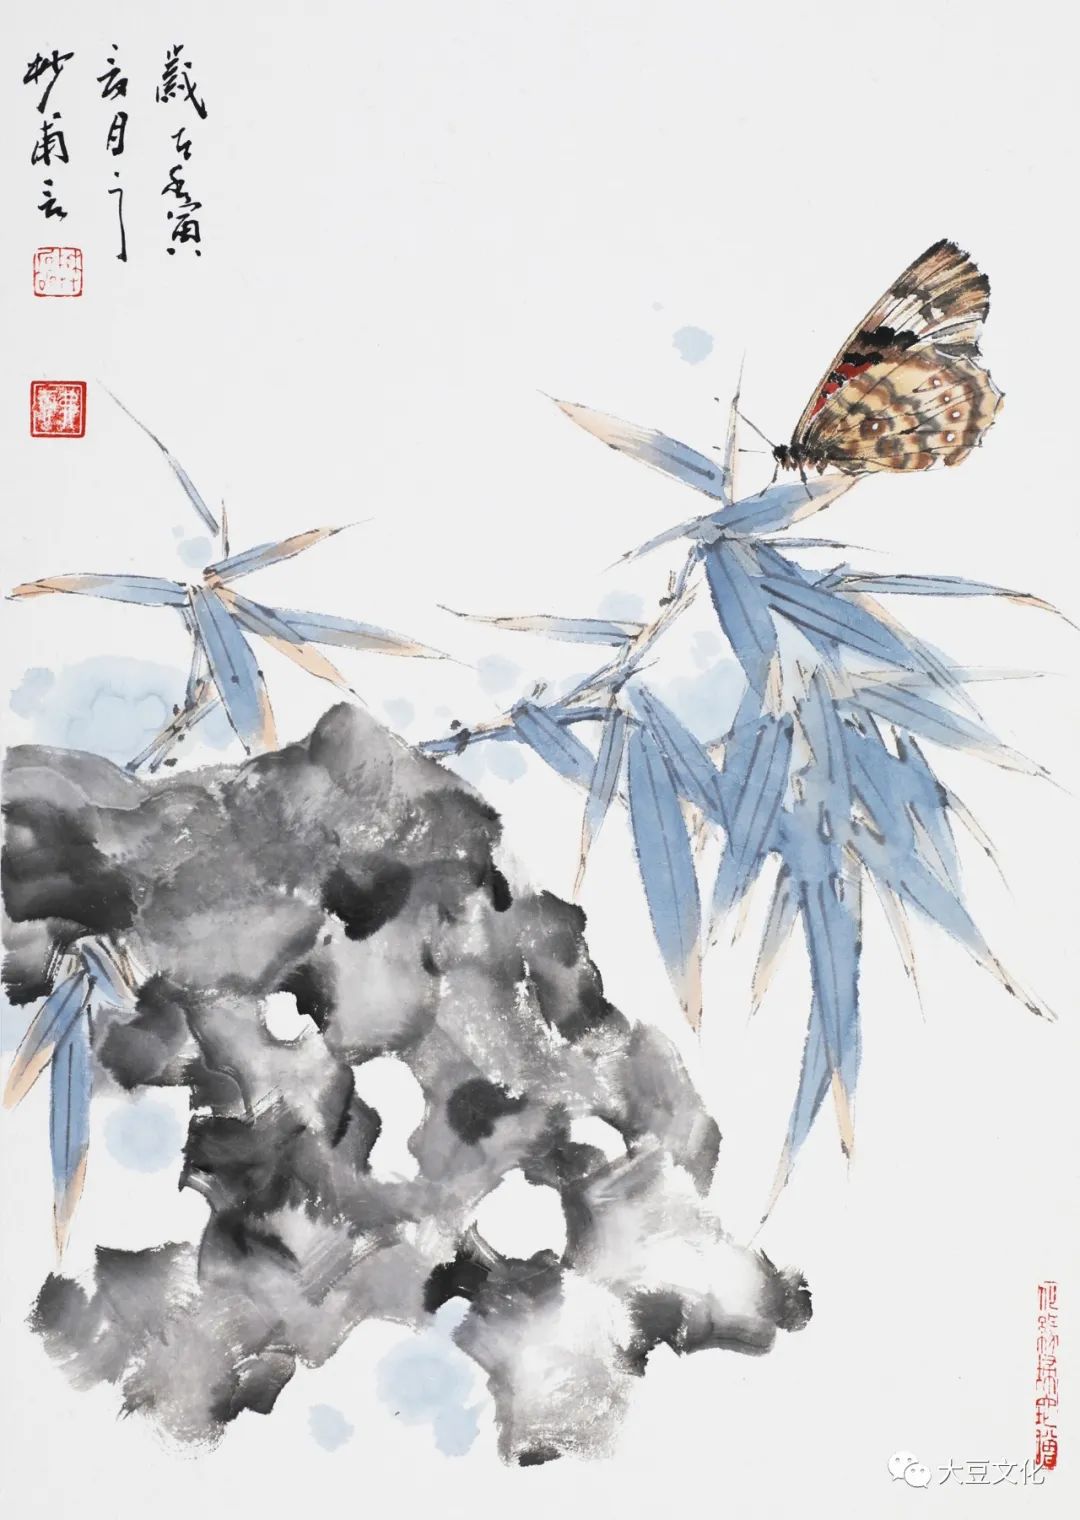 蝶泛灵石之境——青年画家樊磊国画解读